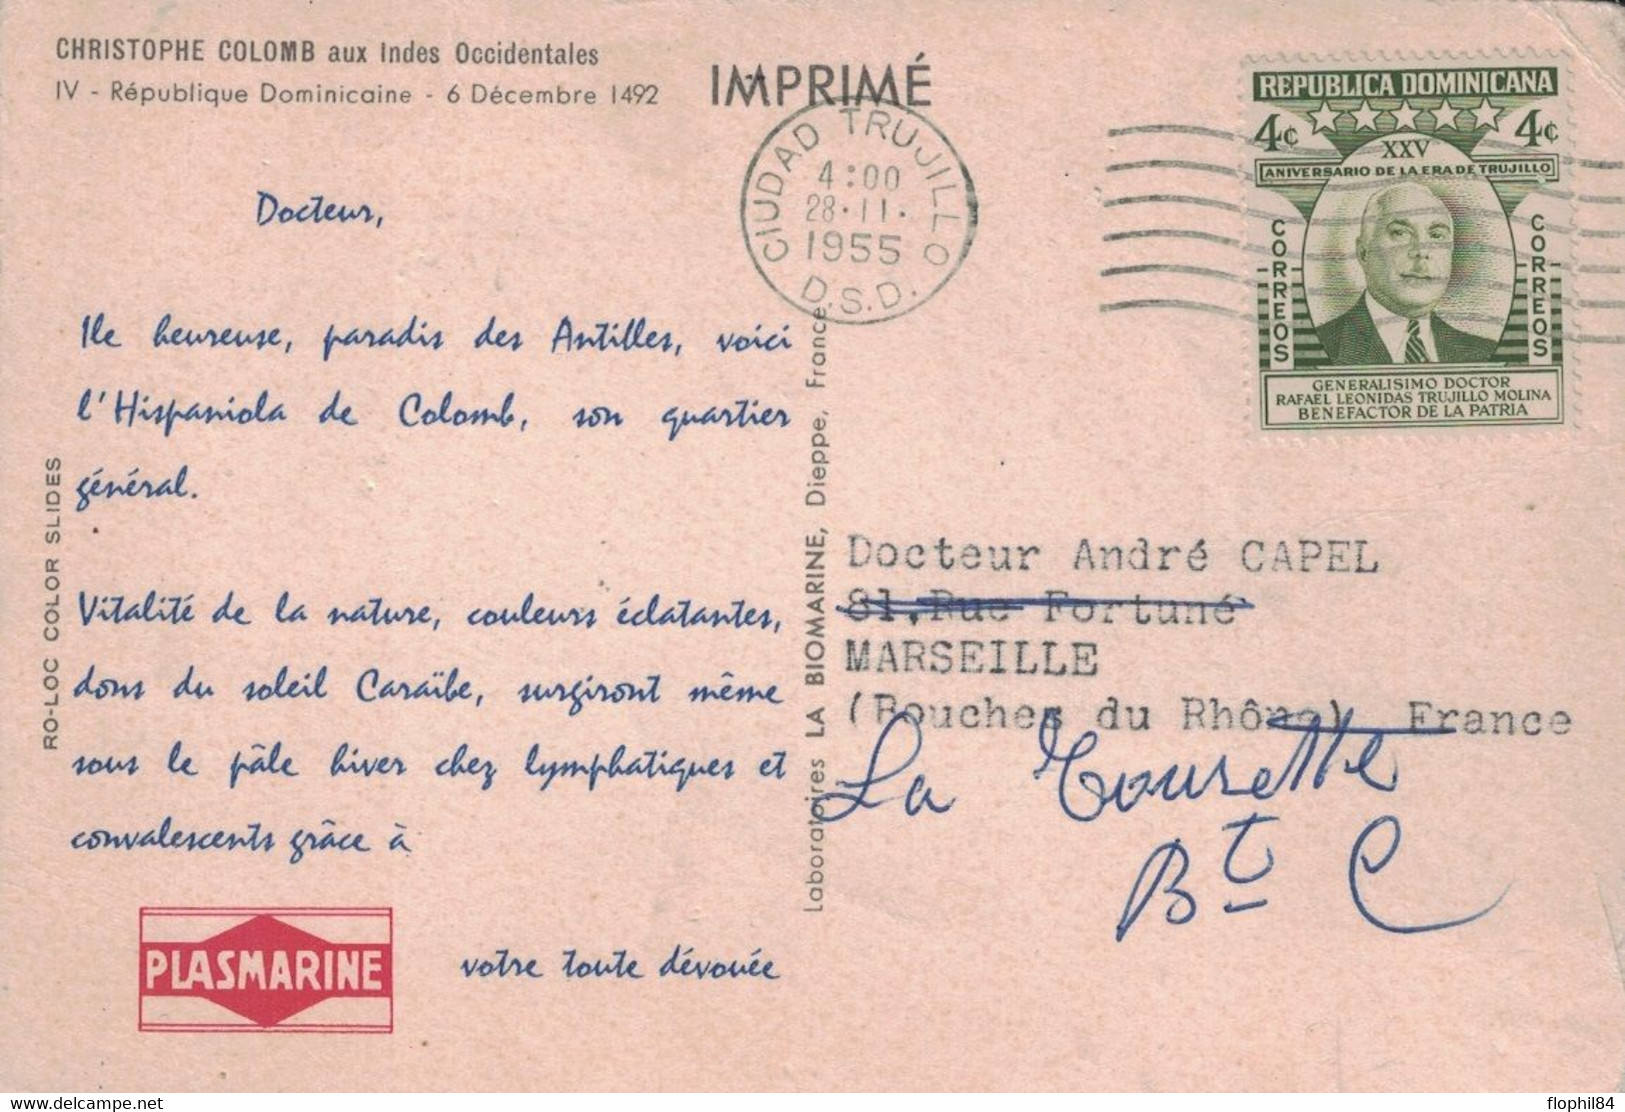 CROISIERE - PLASMARINE 1955 - IONYL - CHRISTOPHE COLOMB AUX INDES OCCIDENTAL- REPUBLIQUE DOMINICANA.ES. - Dominicaanse Republiek